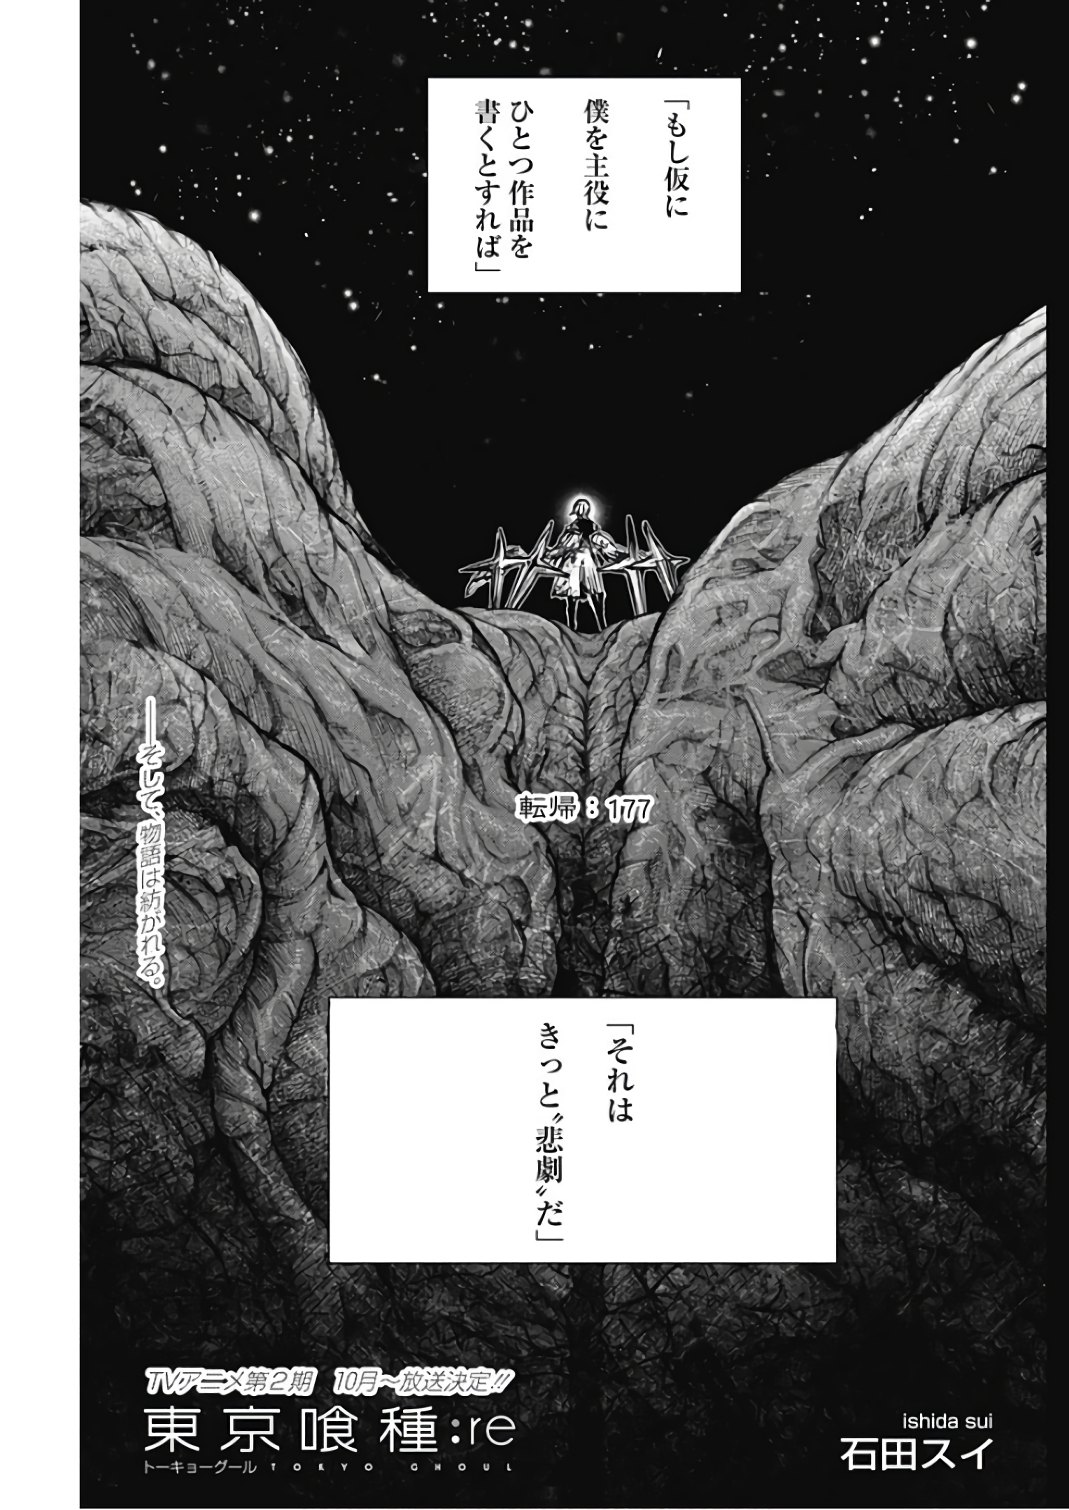 帰ろう、僕らの現実に — mangastories: Tokyo Ghoul // Kaneki Ken Tragic